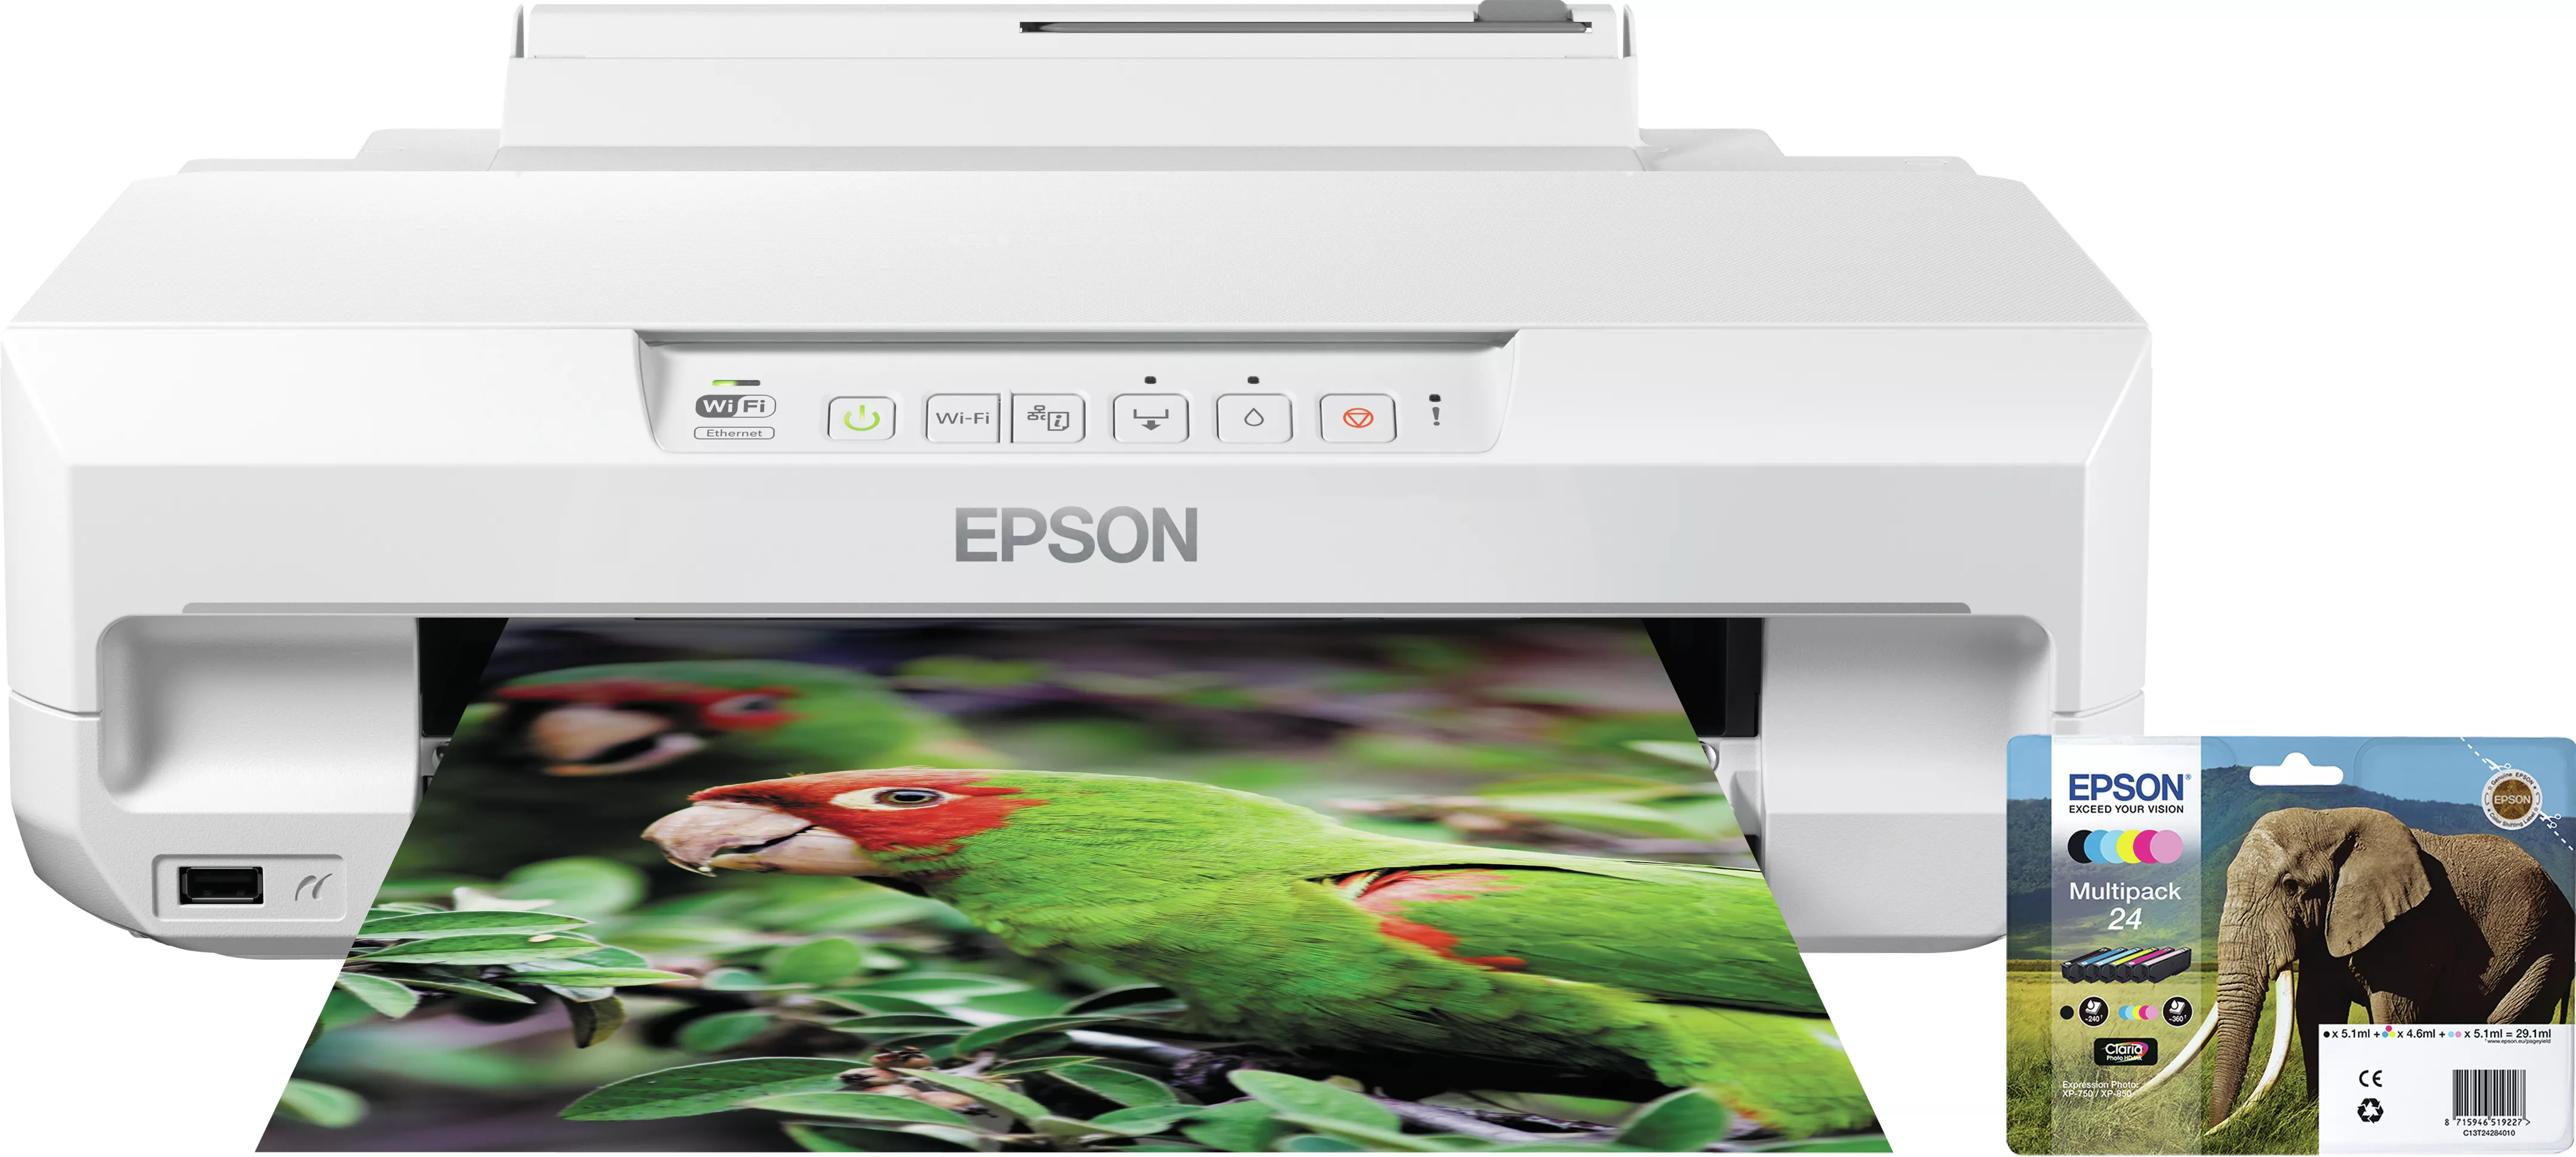 Vente EPSON Expression Photo XP-55 Epson au meilleur prix - visuel 2